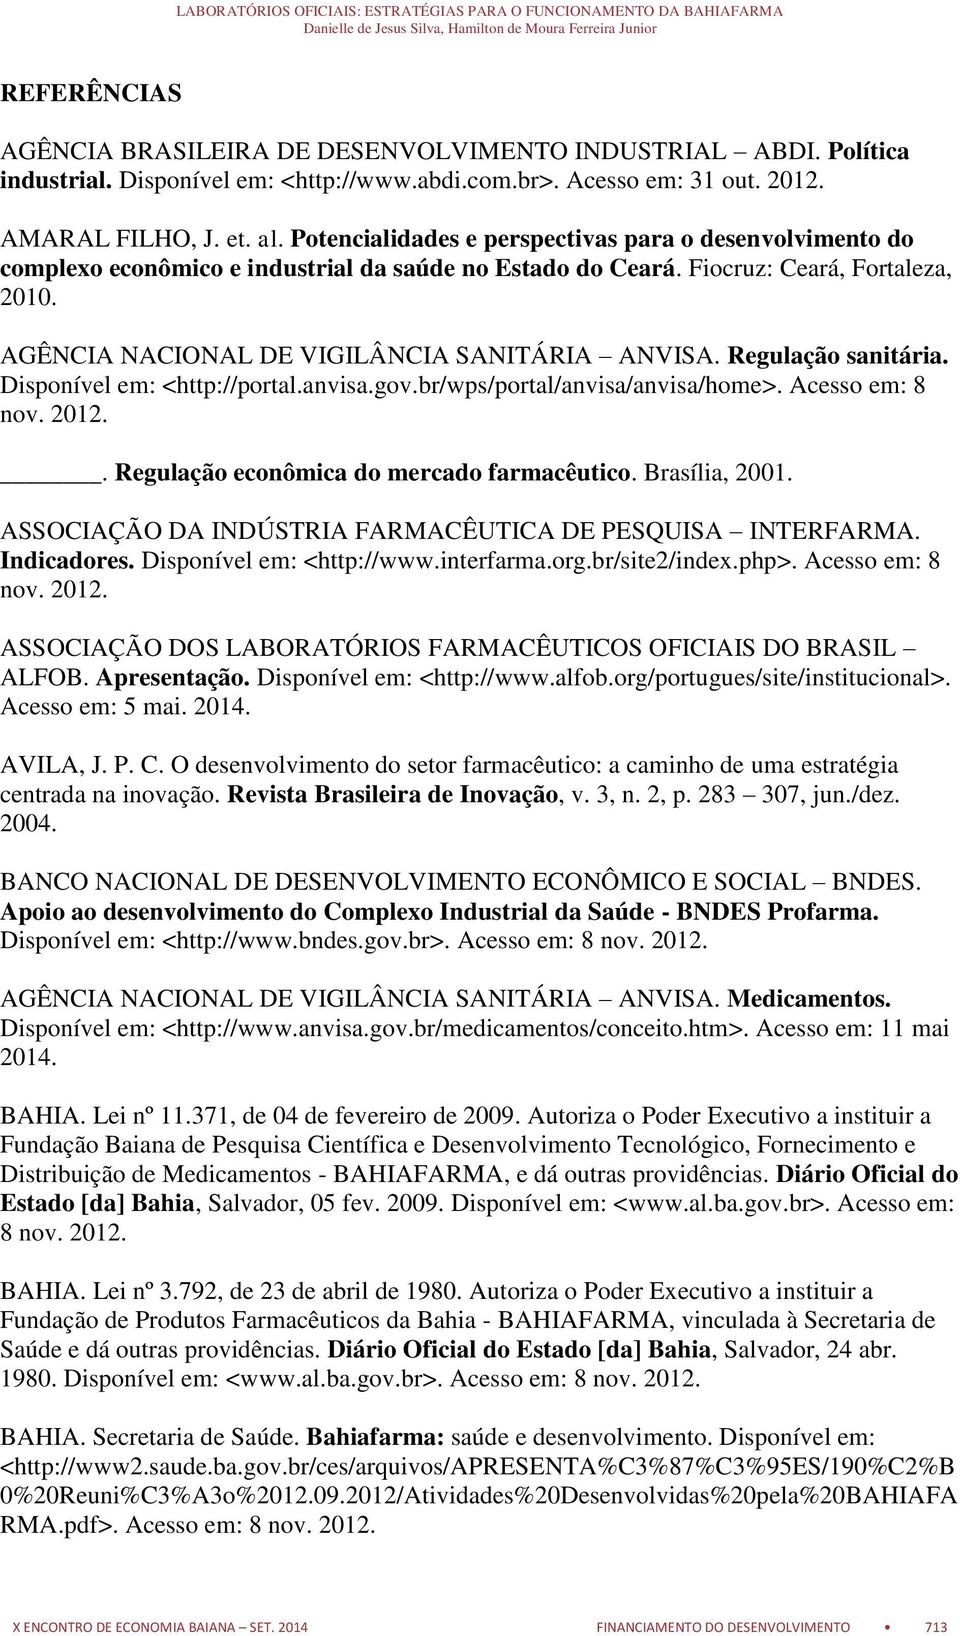 Regulação sanitária. Disponível em: <http://portal.anvisa.gov.br/wps/portal/anvisa/anvisa/home>. Acesso em: 8 nov. 2012.. Regulação econômica do mercado farmacêutico. Brasília, 2001.